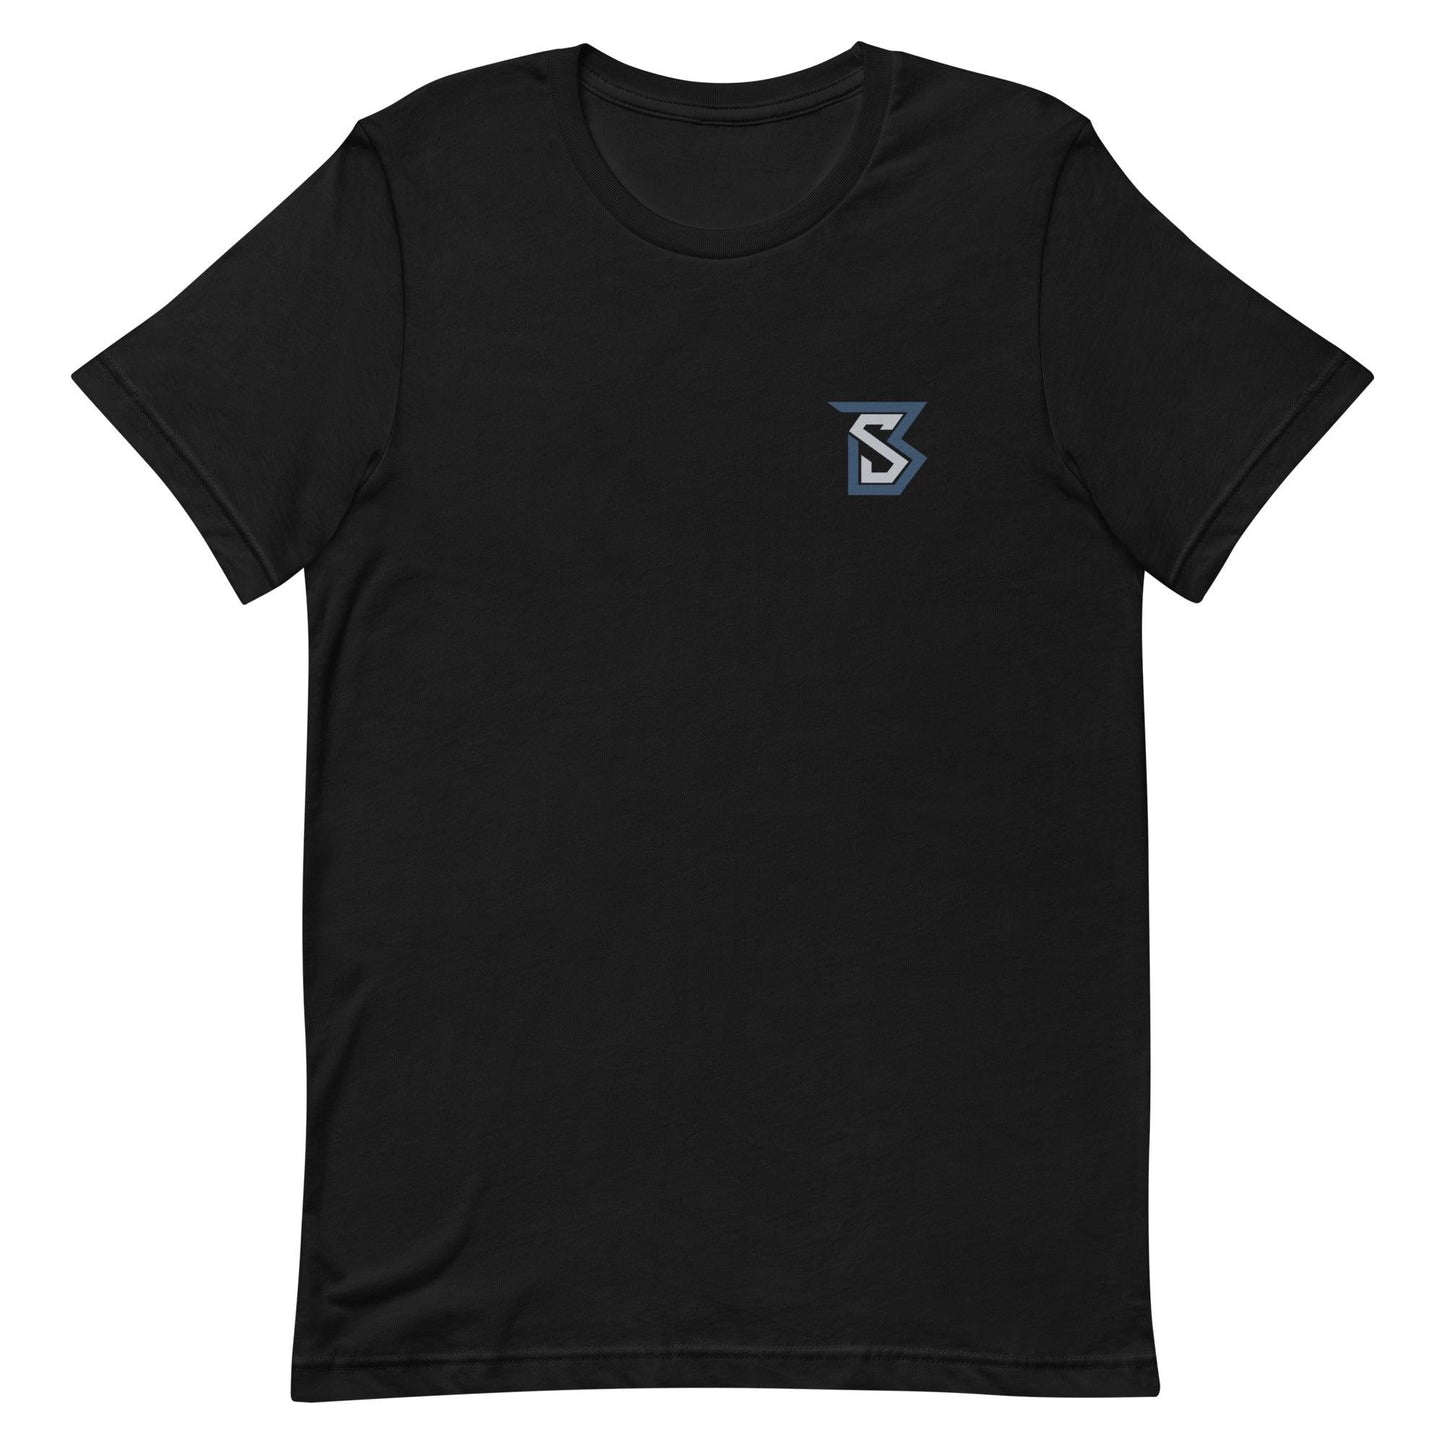 Bentlee Sanders "Signature" T-Shirt - Fan Arch